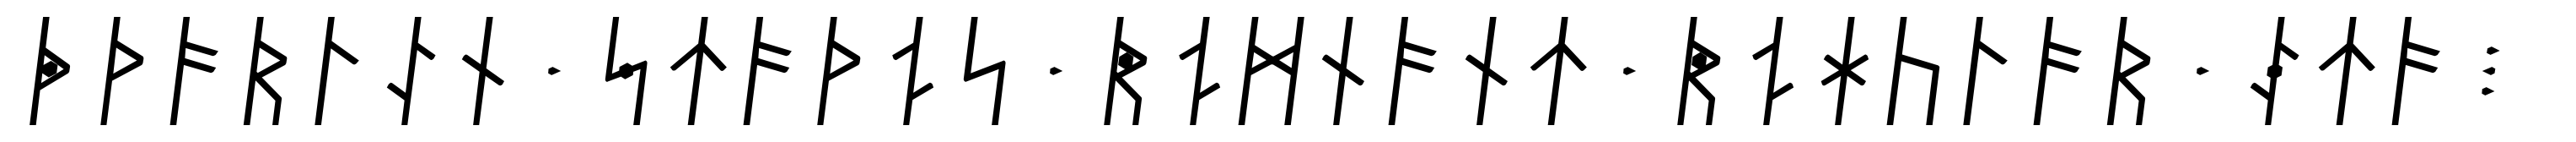 Dvarlin Staves Remnant Regular Italic